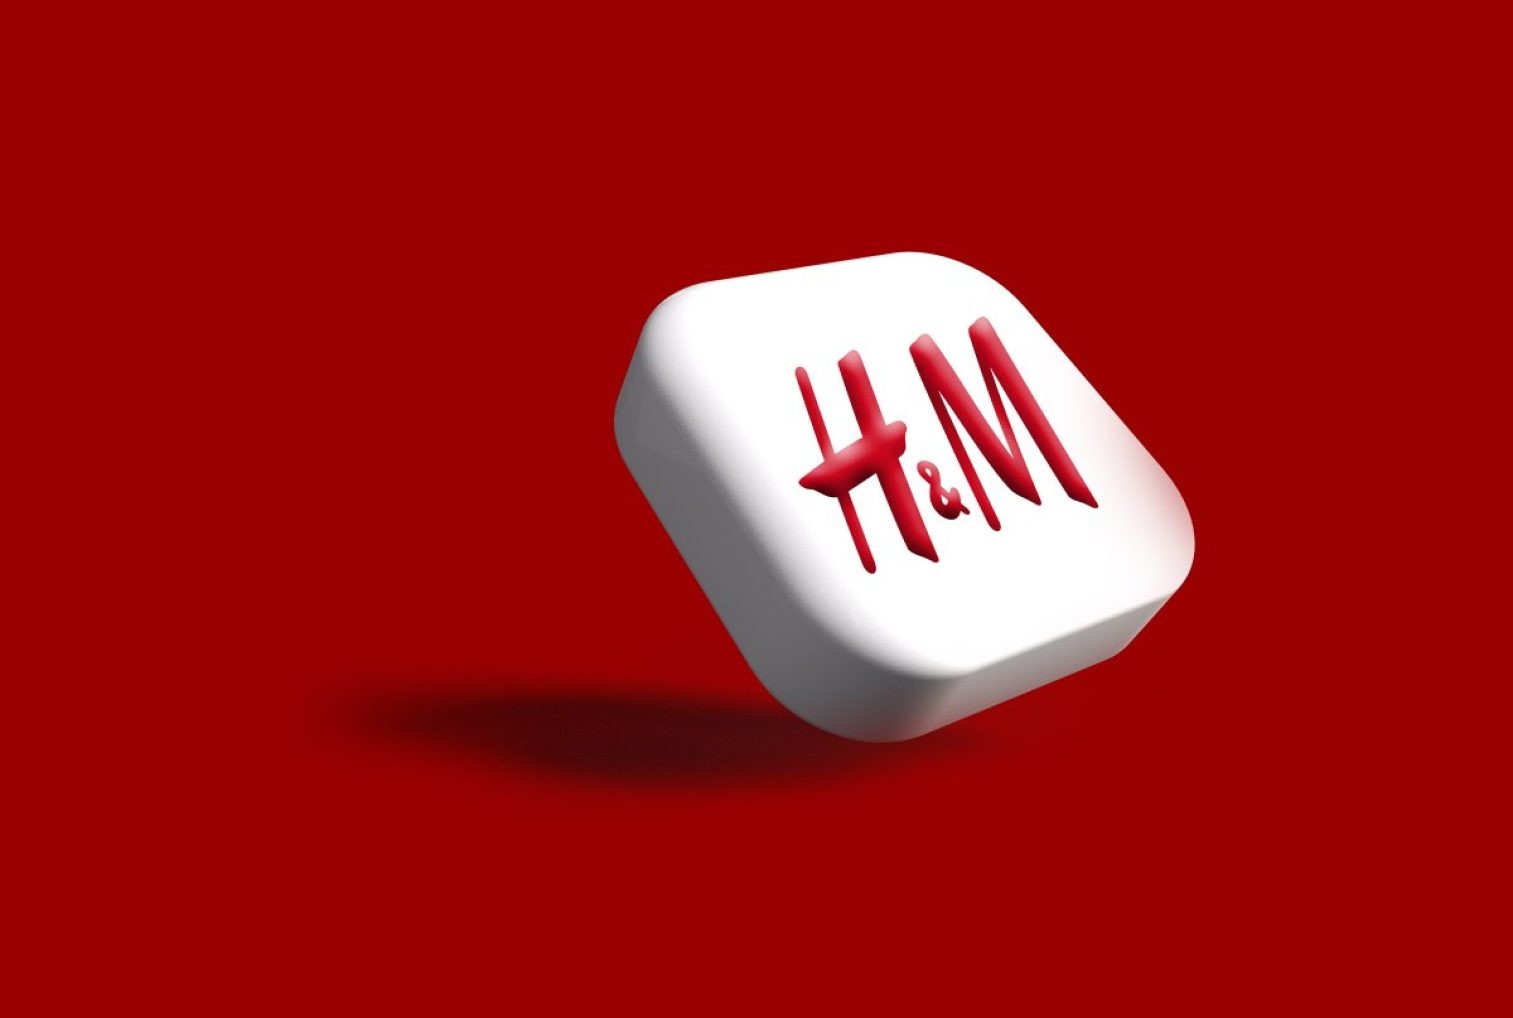 H&M icon in 3D. My 3D work may be seen in the section titled "3D Render."